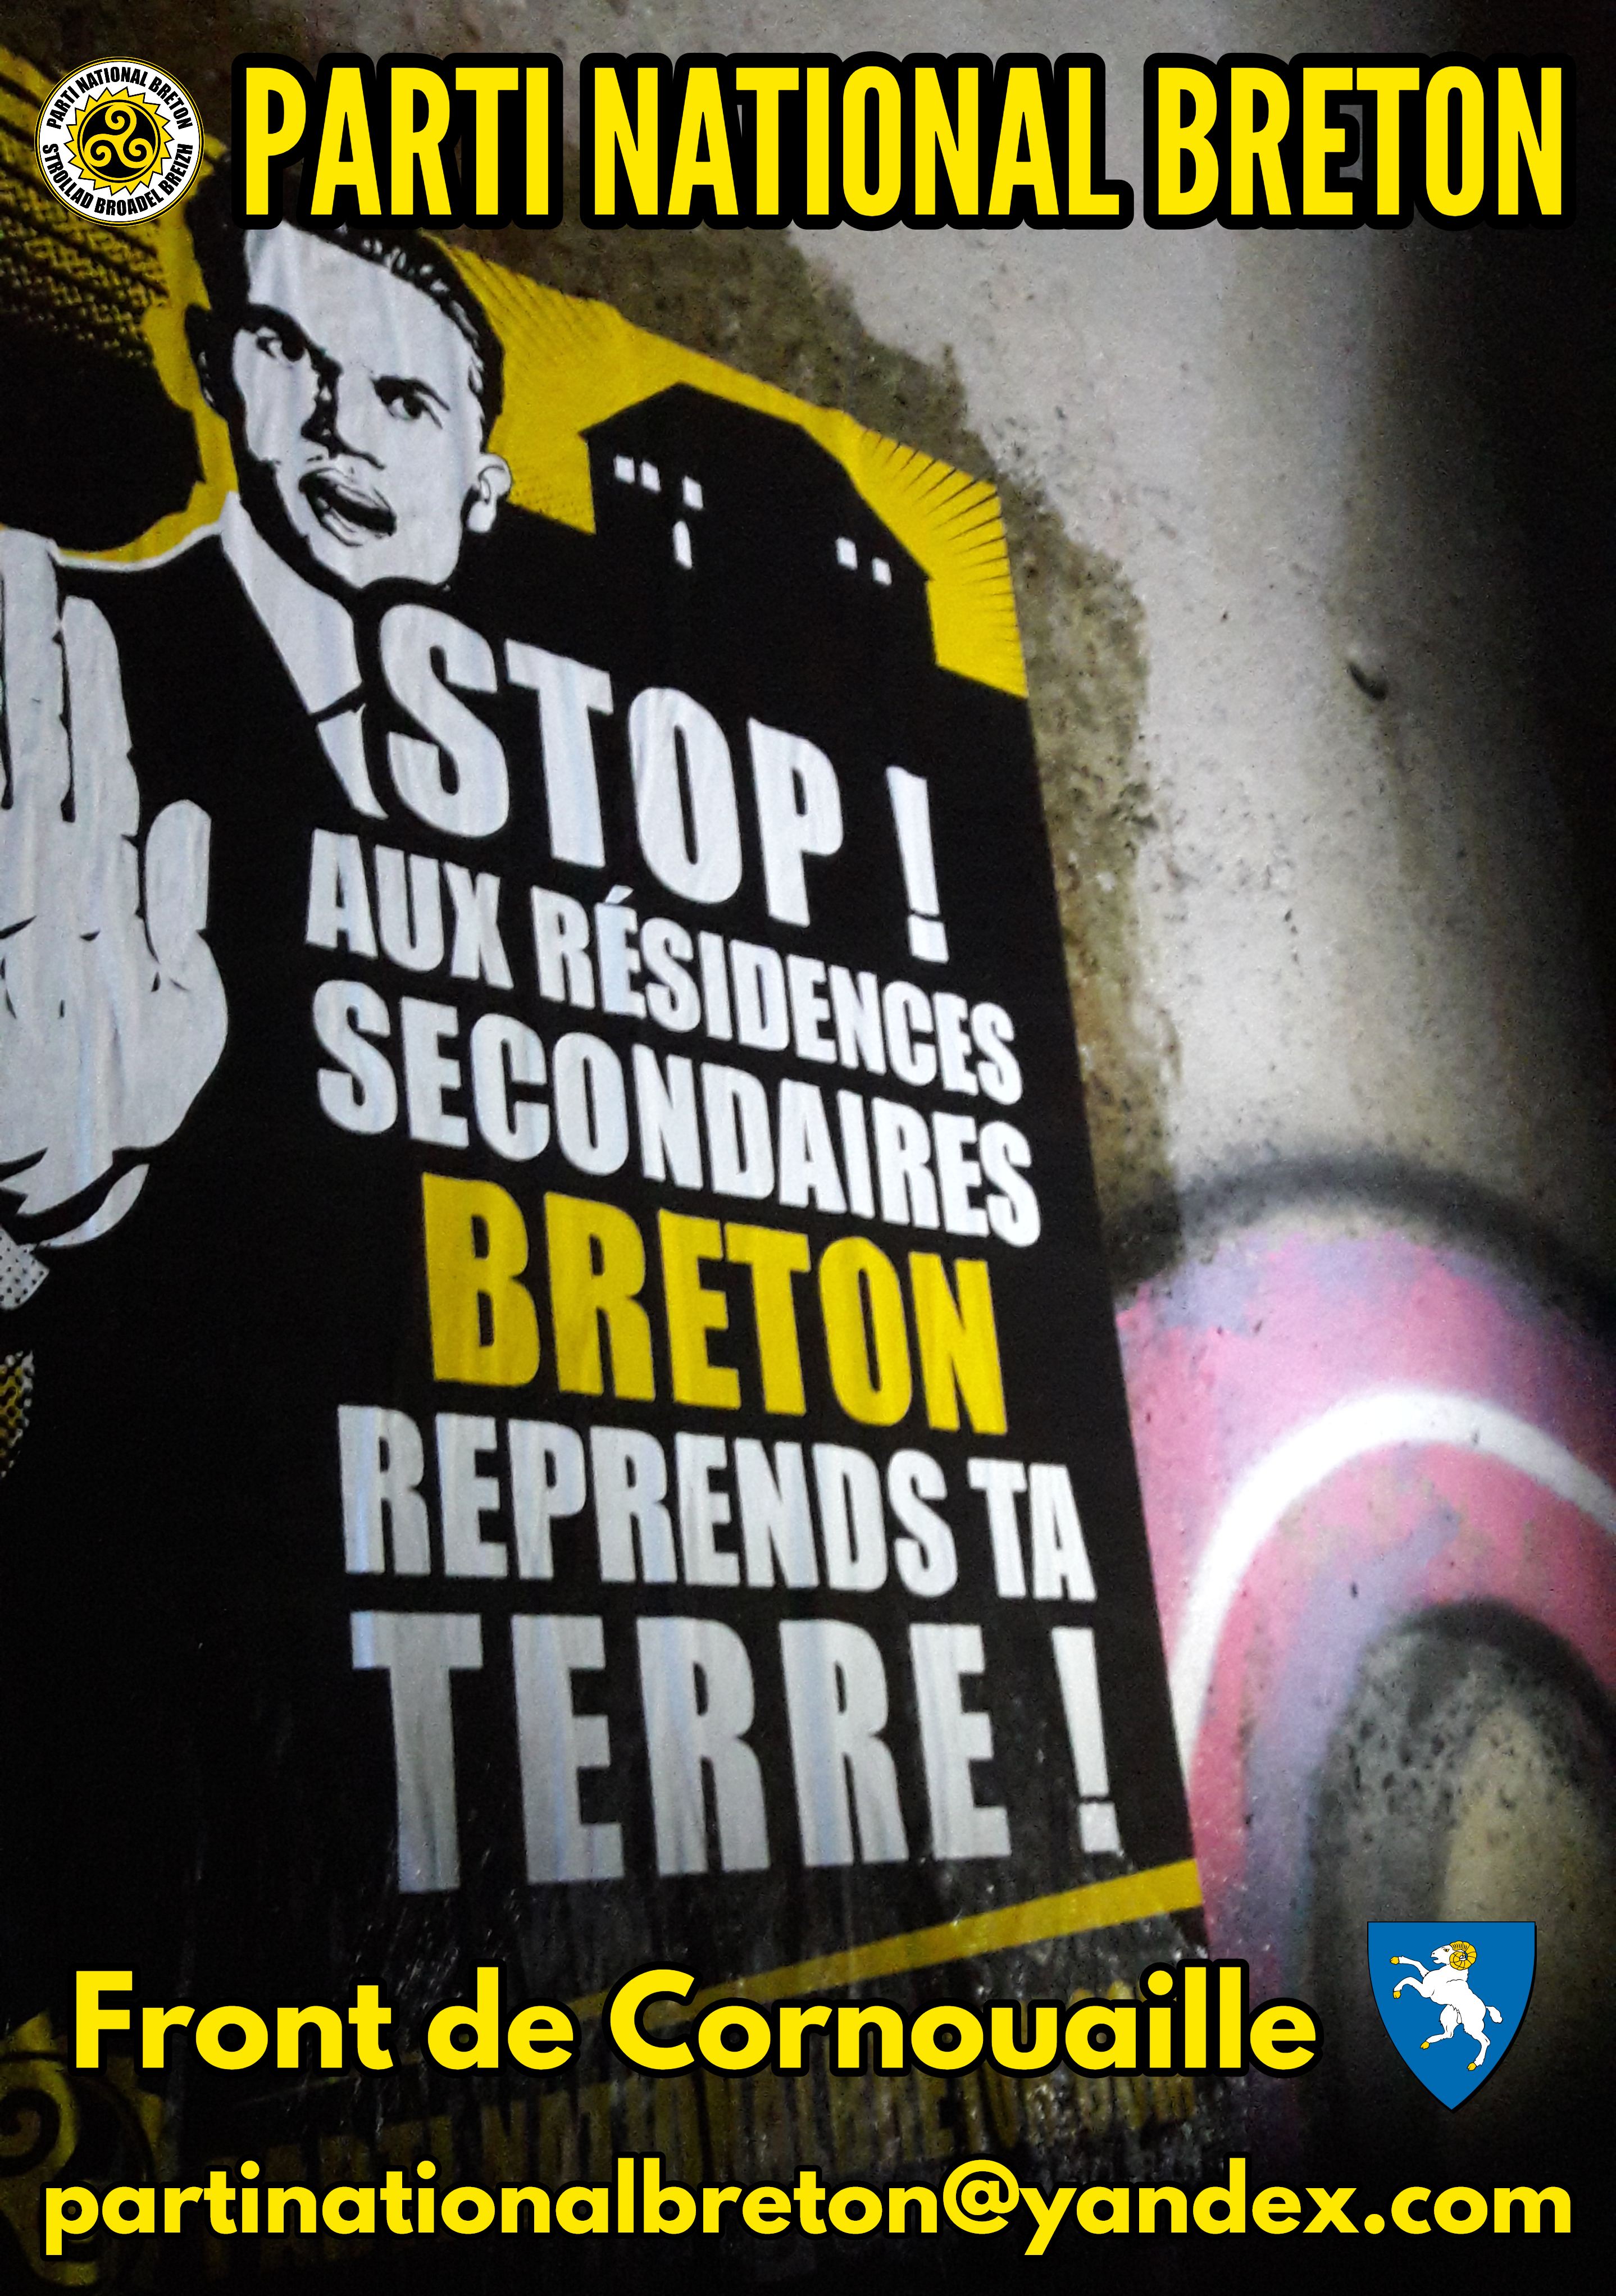 Les logements bretons aux Bretons : action du Parti National Breton contre les résidences secondaires en Cornouaille !